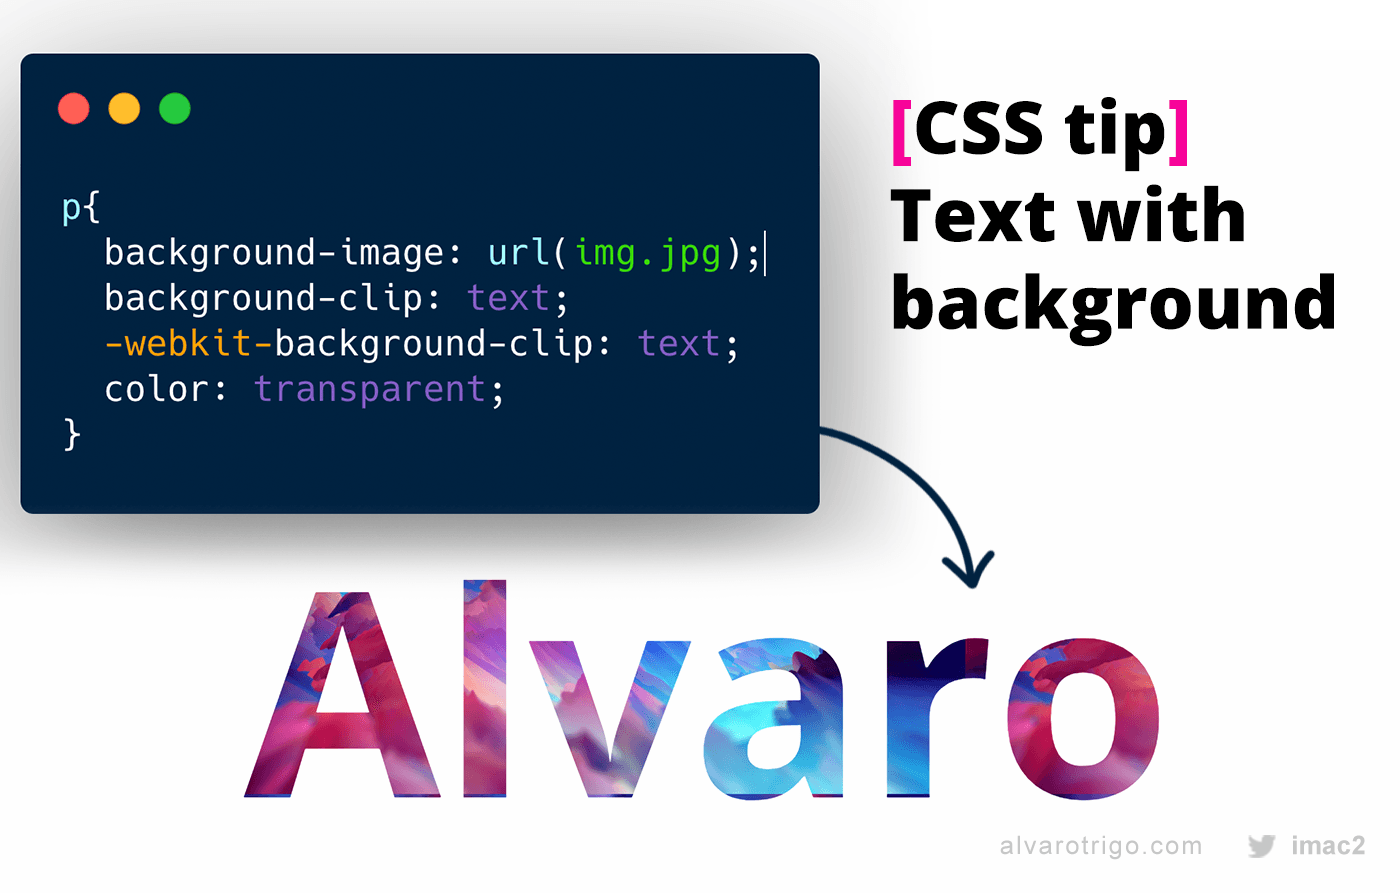 Tạo văn bản đẹp với CSS không chỉ là cách đơn giản để tăng tính thẩm mỹ cho trang web của bạn, mà còn giúp thể hiện sự chuyên nghiệp và tăng khả năng tương tác với khách hàng. Hãy xem ngay hình ảnh liên quan để tìm kiếm những ý tưởng thiết kế văn bản độc đáo và sáng tạo.